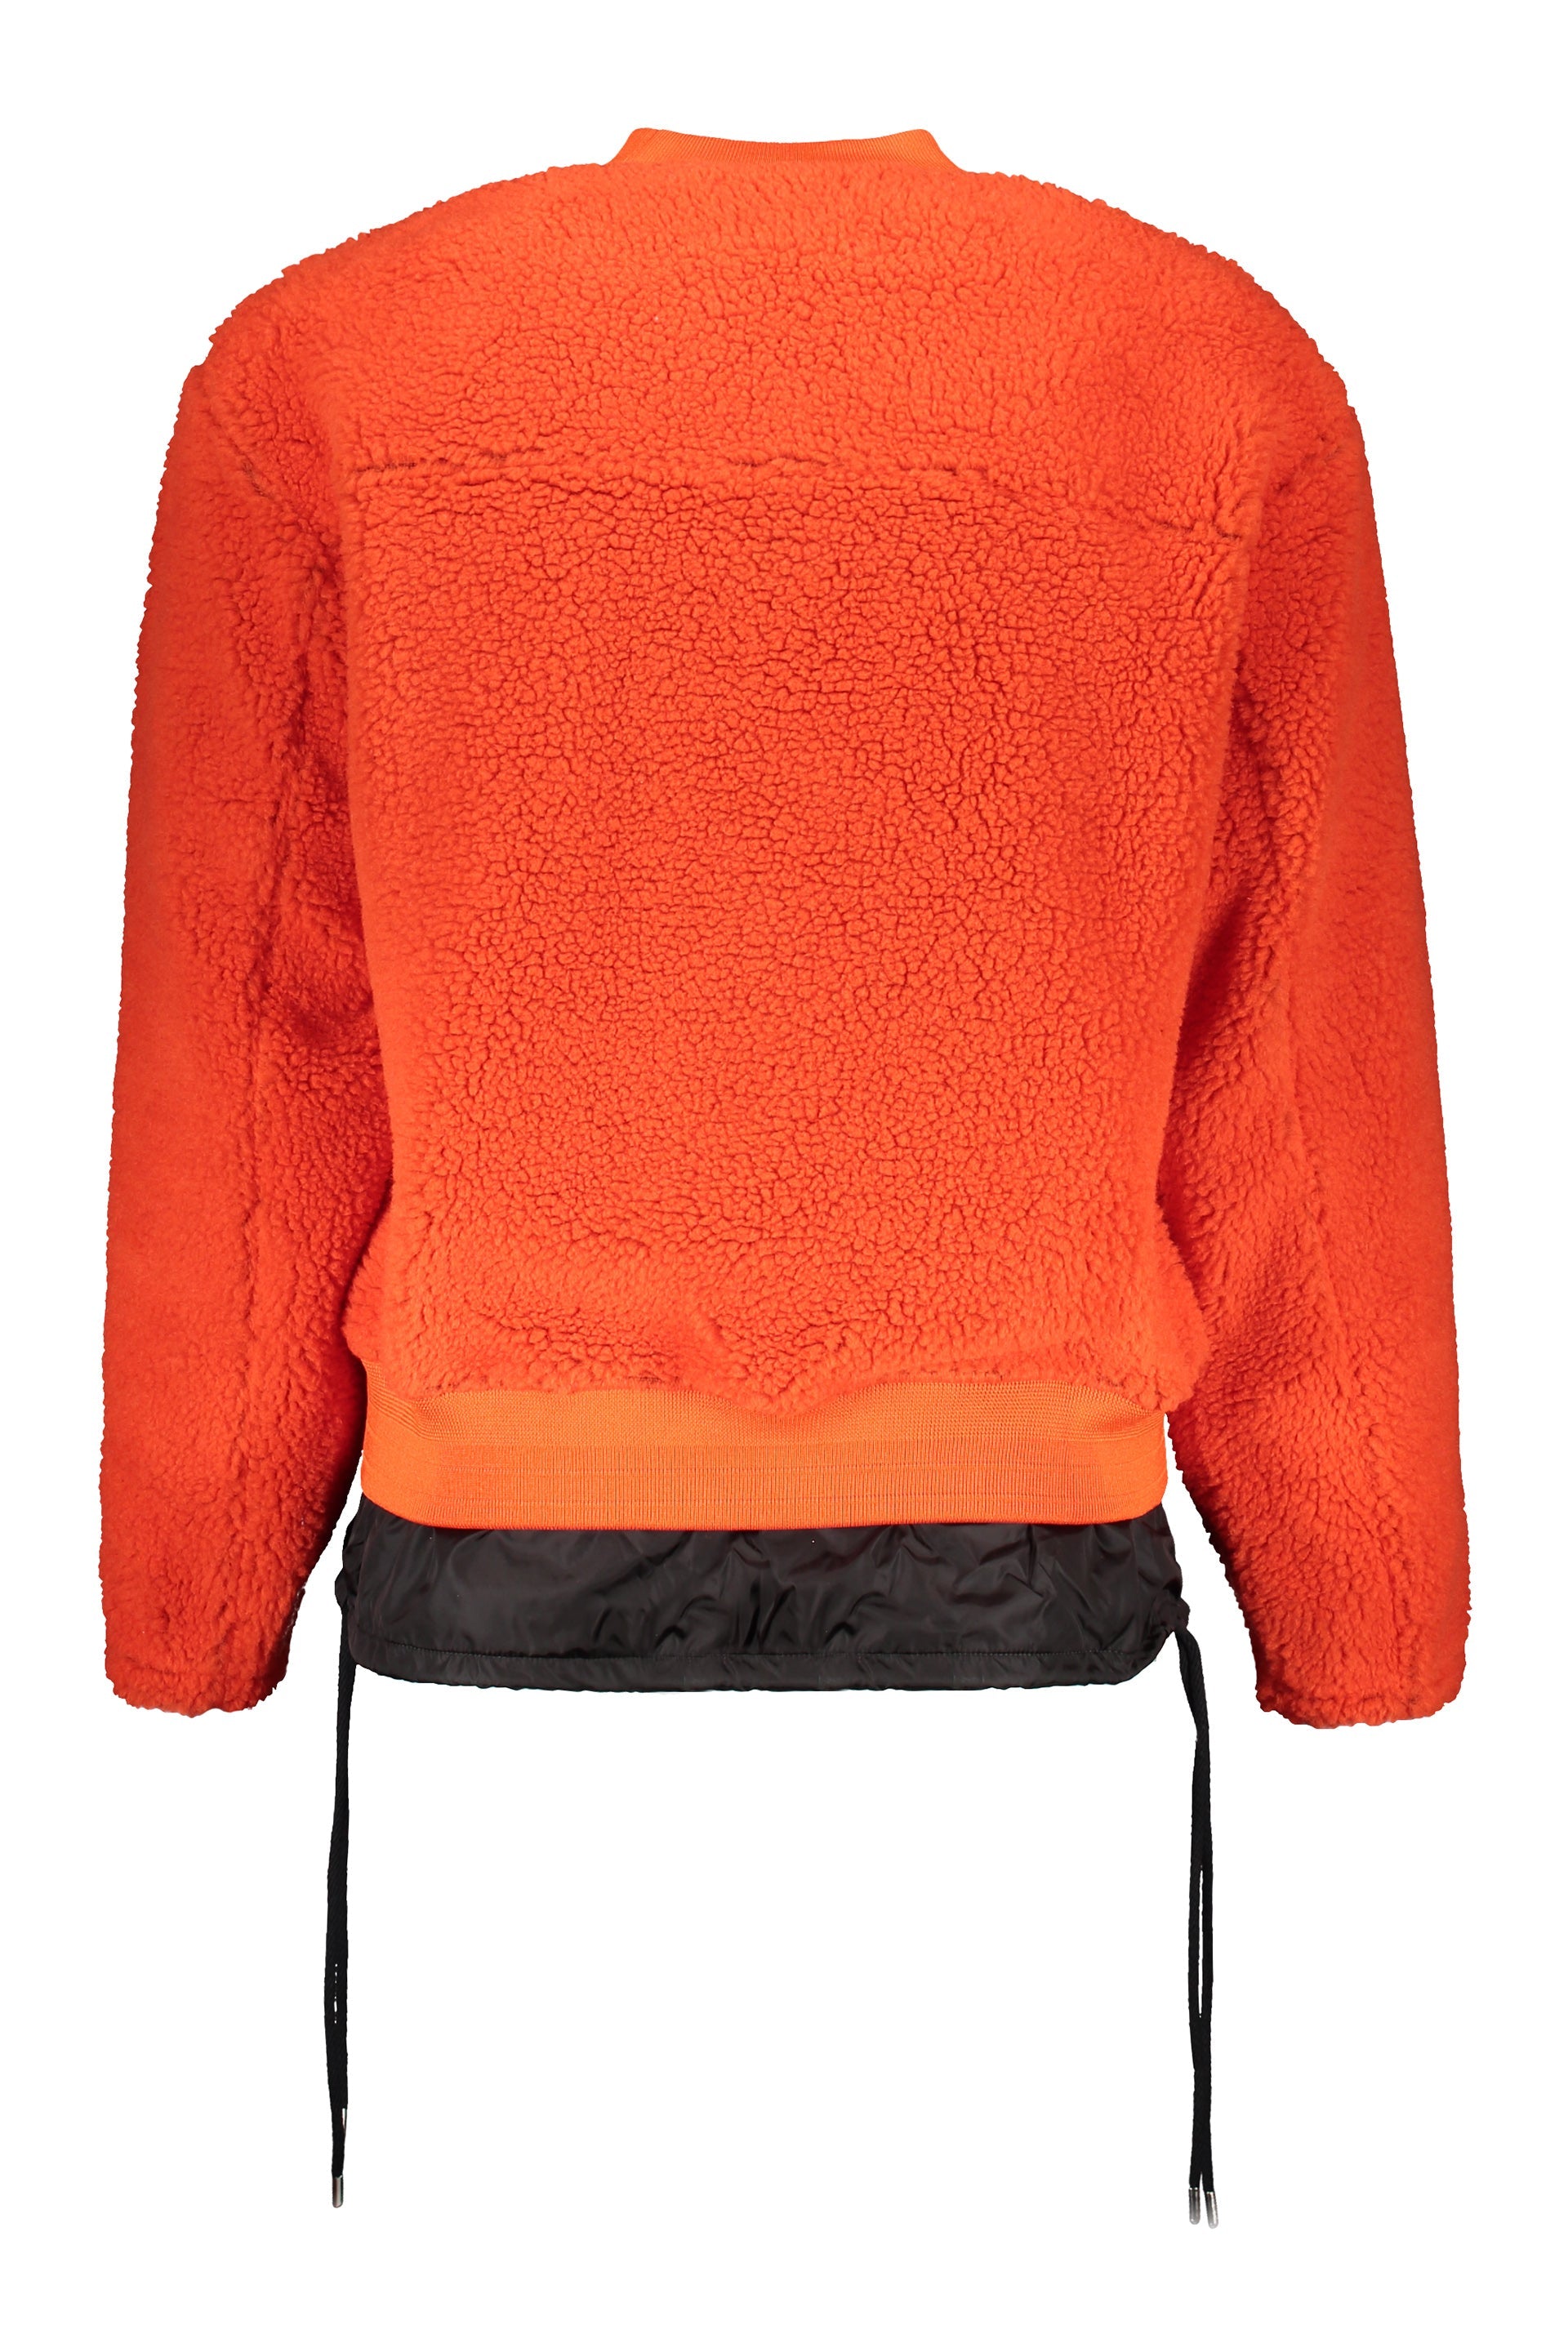 AMBUSH-OUTLET-SALE-Fleece-sweatshirt-Strick-S-ARCHIVE-COLLECTION-2.jpg